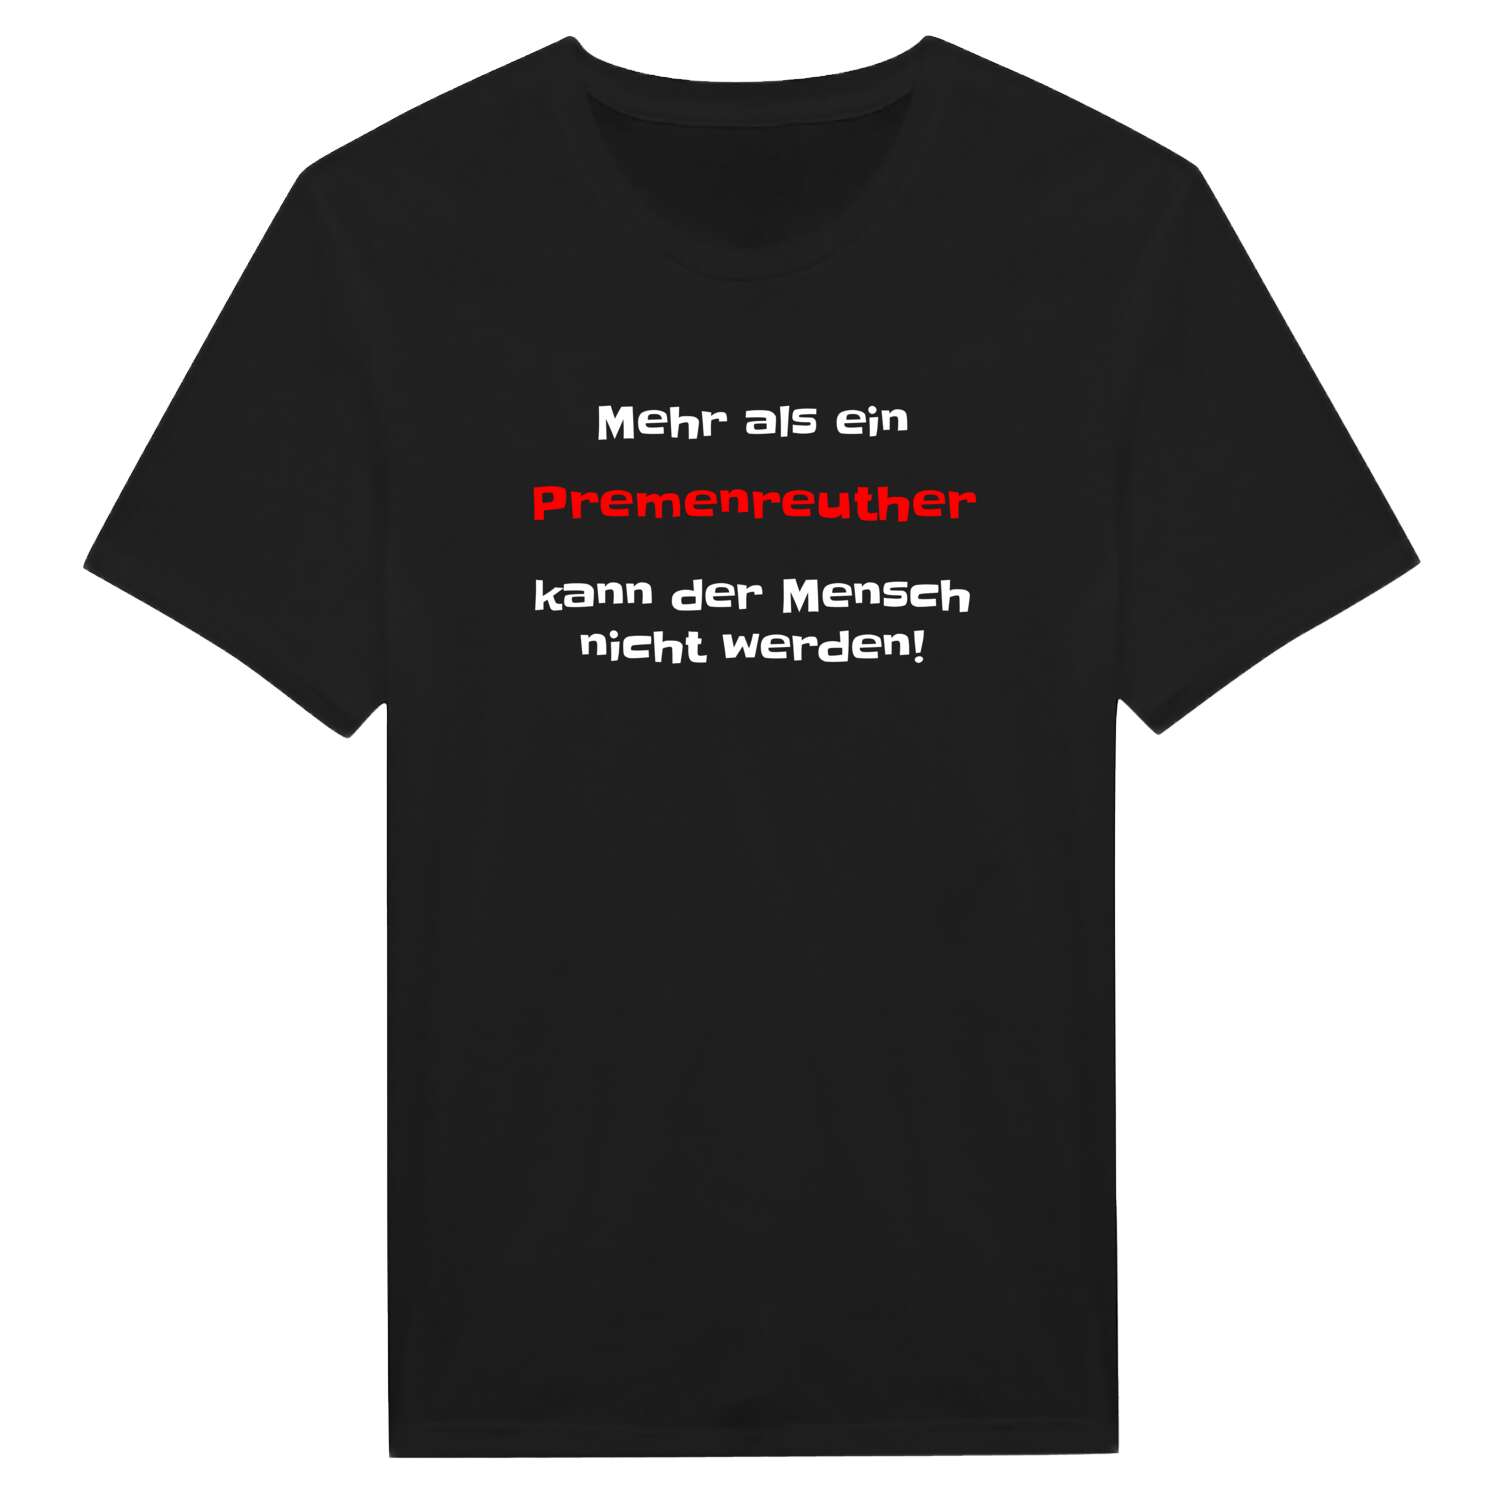 Premenreuth T-Shirt »Mehr als ein«